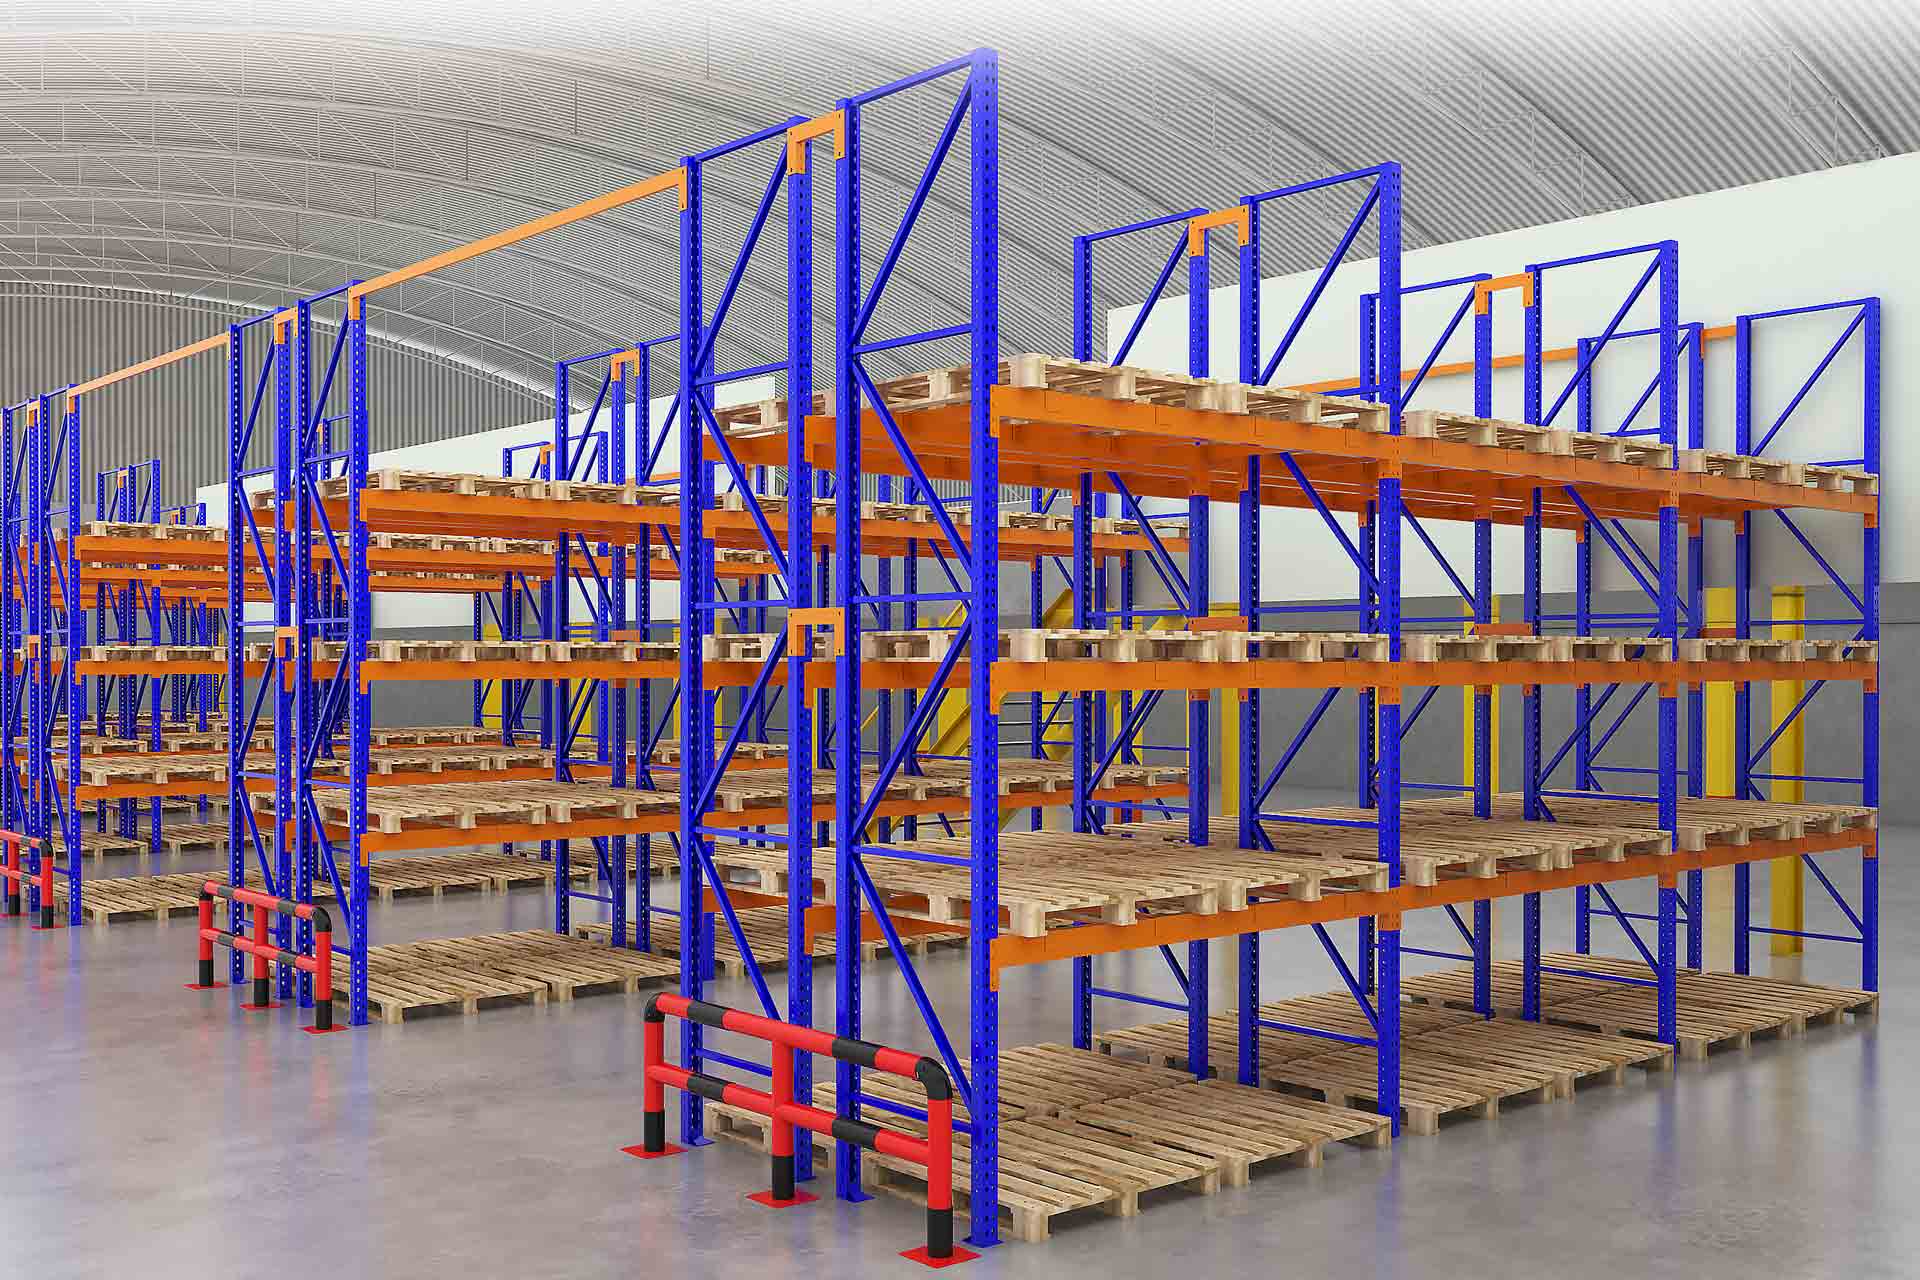 ชั้นวางพาเลท ชั้นวางสินค้าในโรงงานอุตสาหกรรม 3D ร้านประเสริฐภัณฑ์